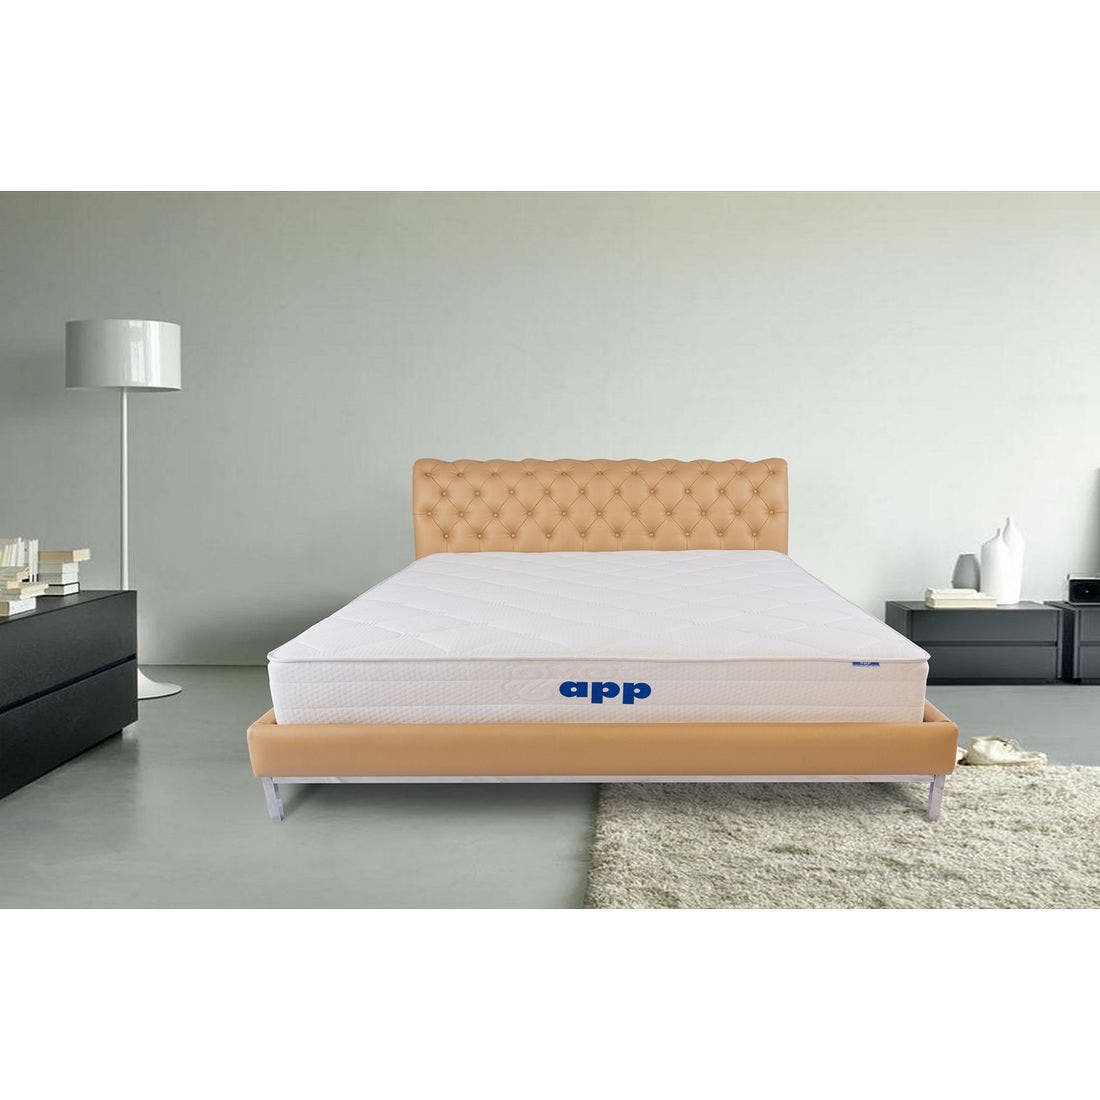 39015074-mattress-bedding-mattresses-pocket-spring-mattress-31